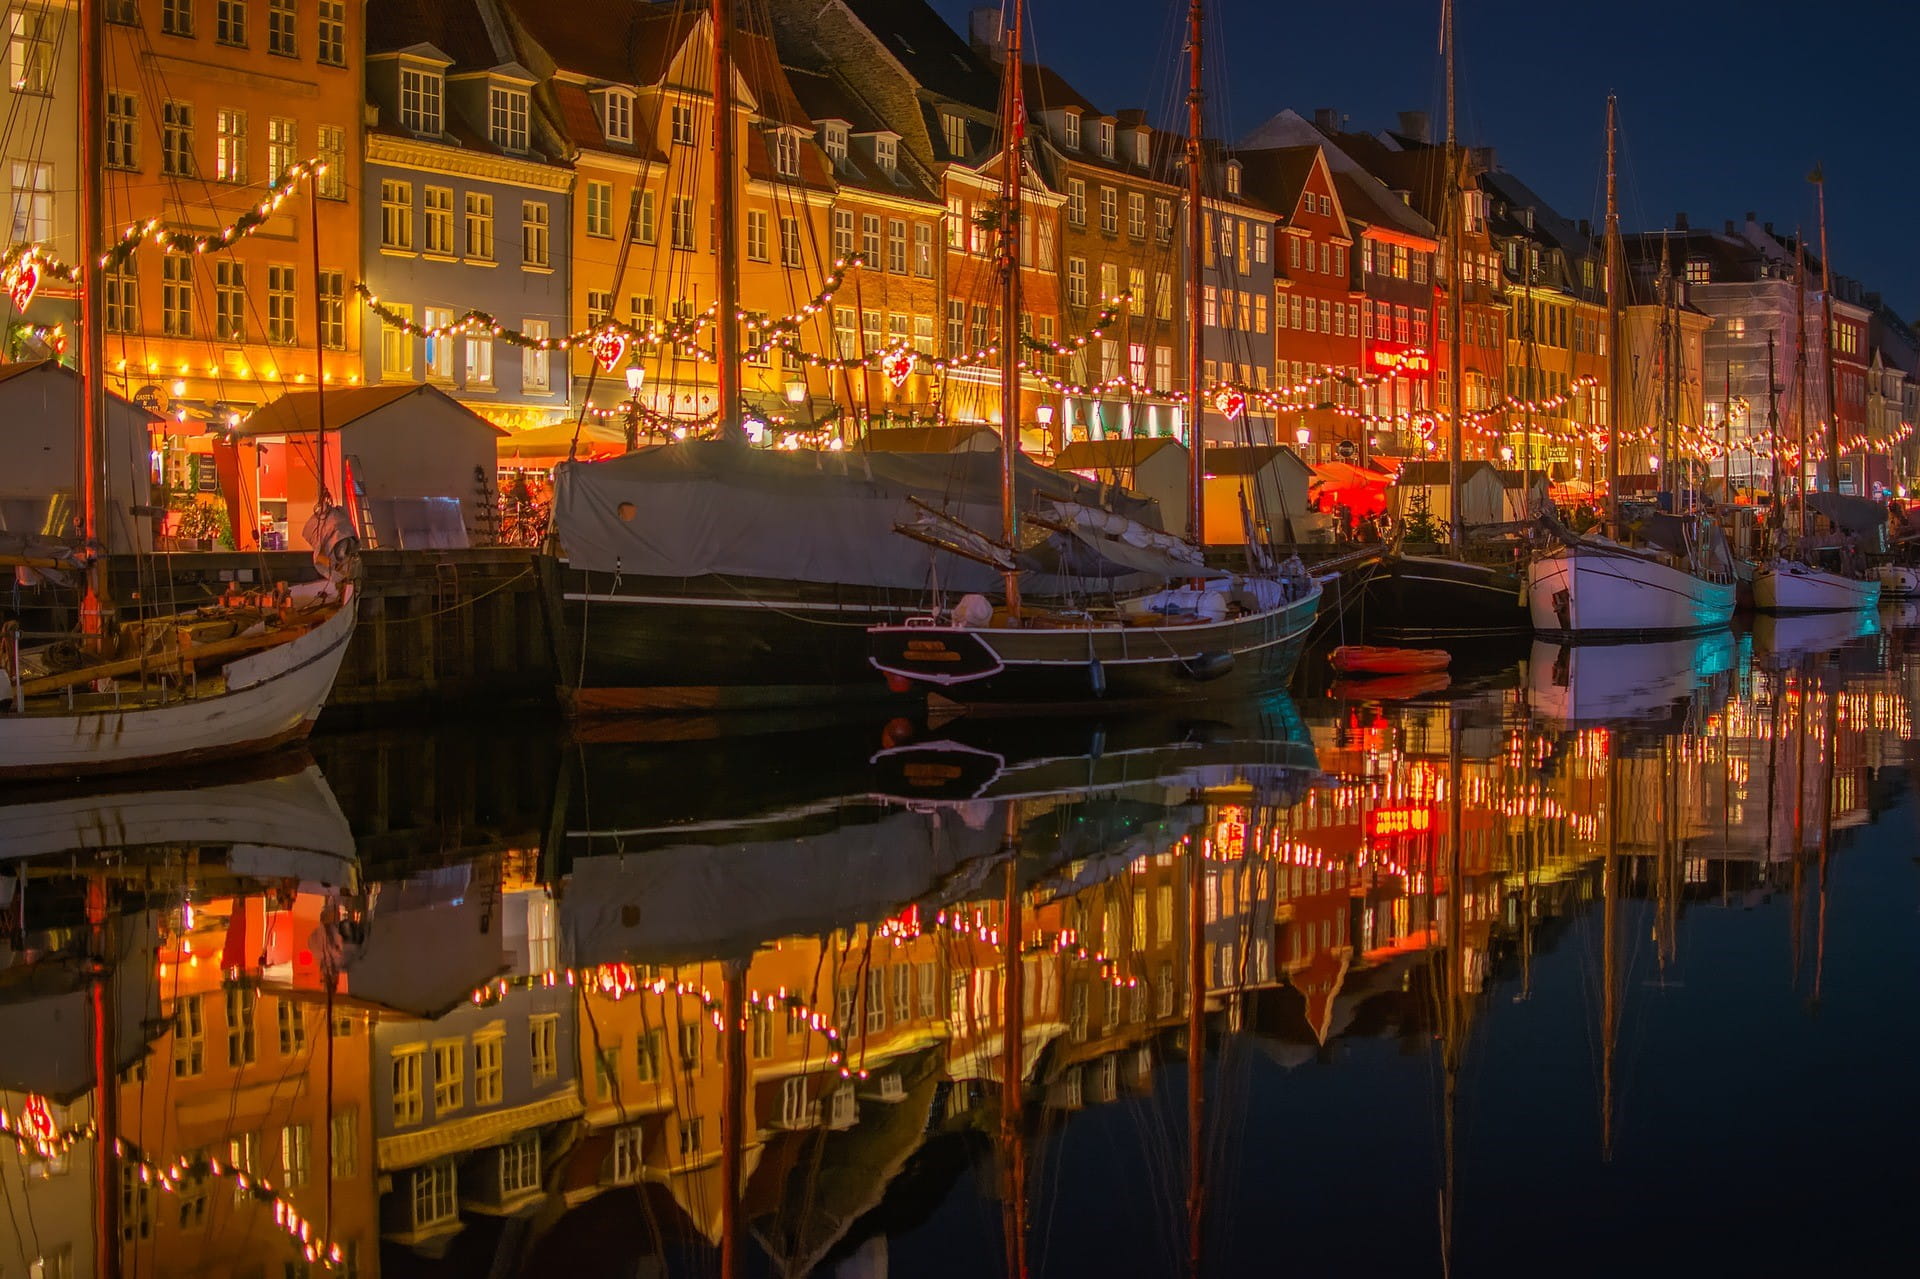 Eine dänische Stadt bei Nacht: vor den beleuchteten Häusern liegen kleine und mittelgroße Boote.